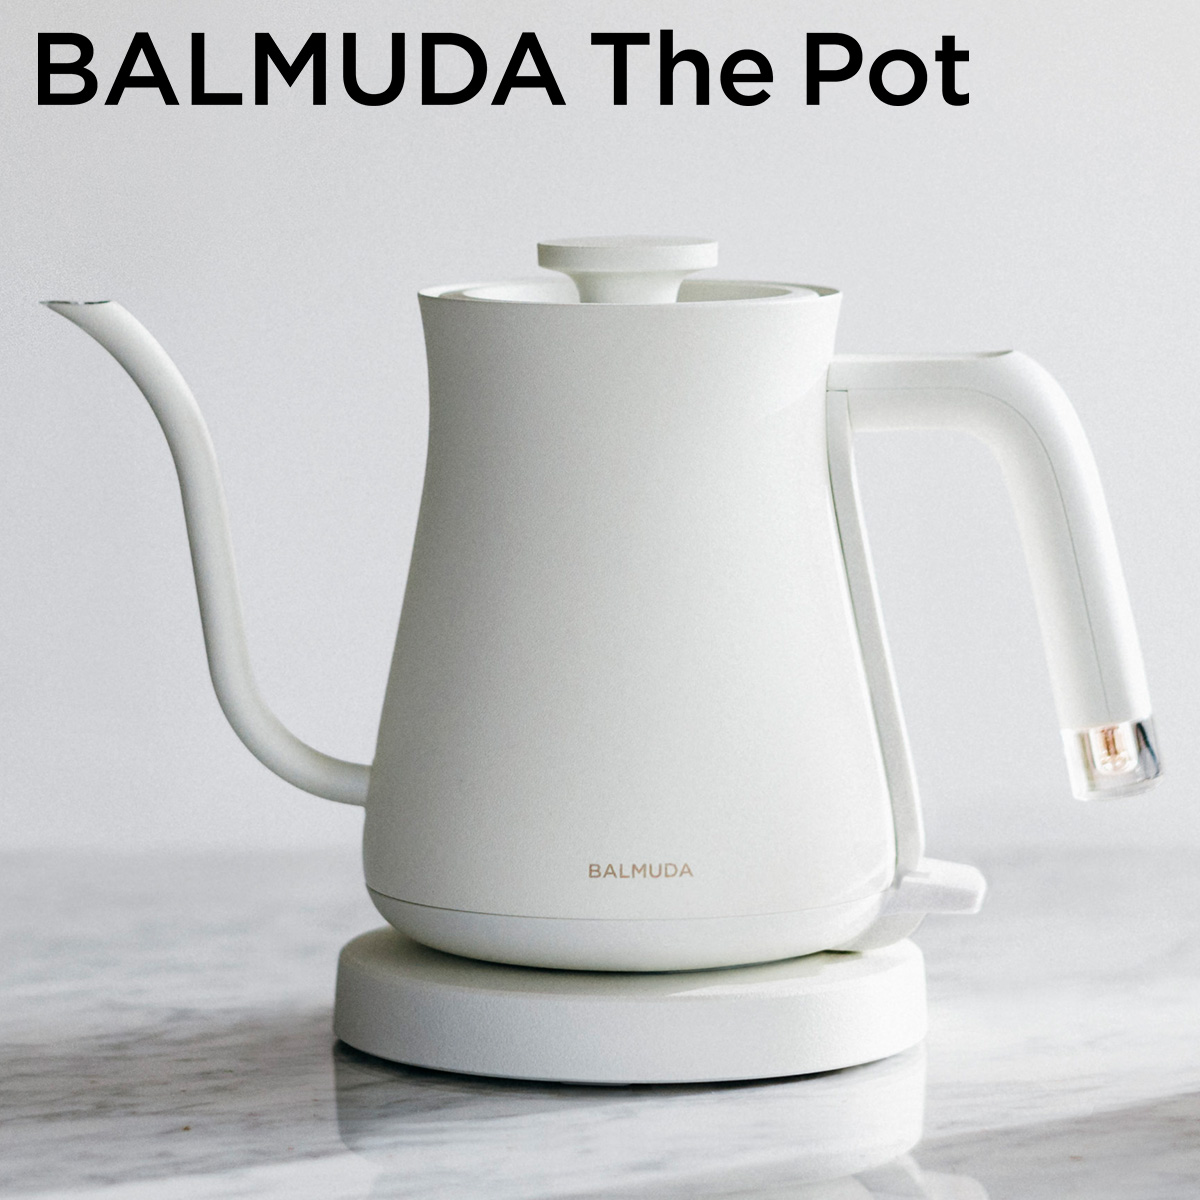 ザ・ポット 電気ケトル 0.6L BALMUDA The Pot ドリップケトル ホワイト